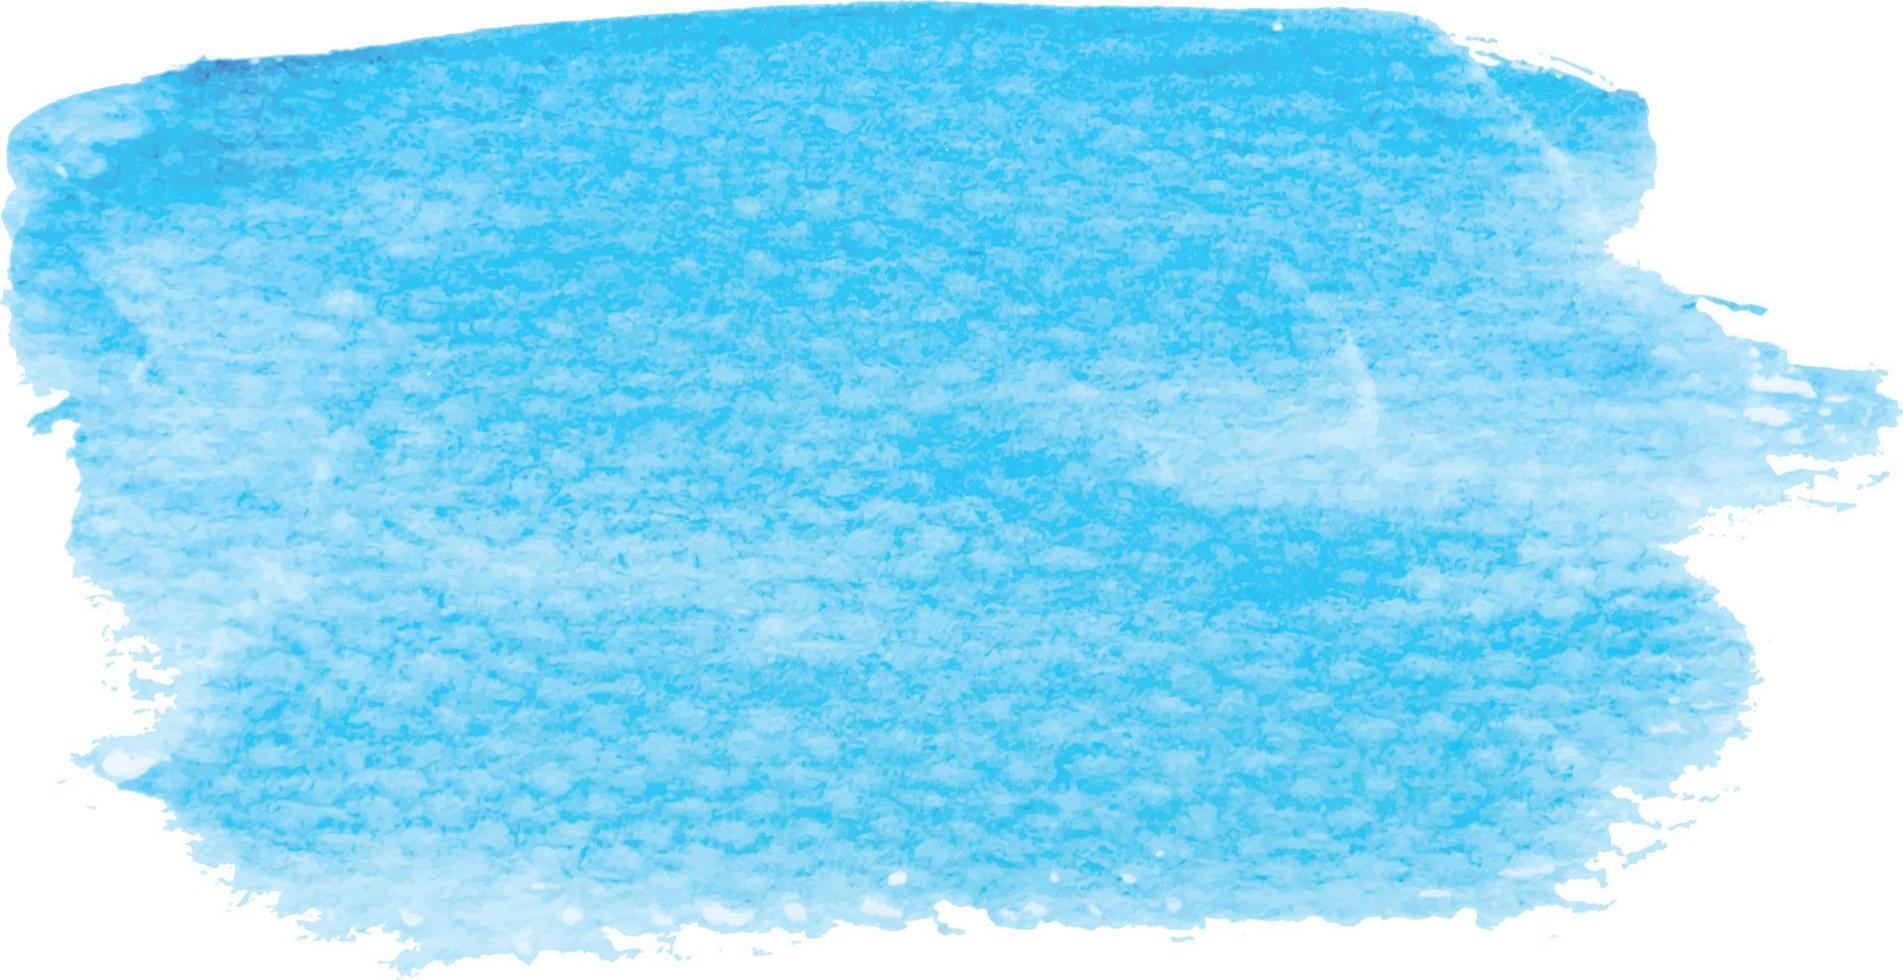 blauwe kleur vector hand getekende aquarel vloeibare vlek. abstract aqua vlekken krabbel druppel element illustratie behang